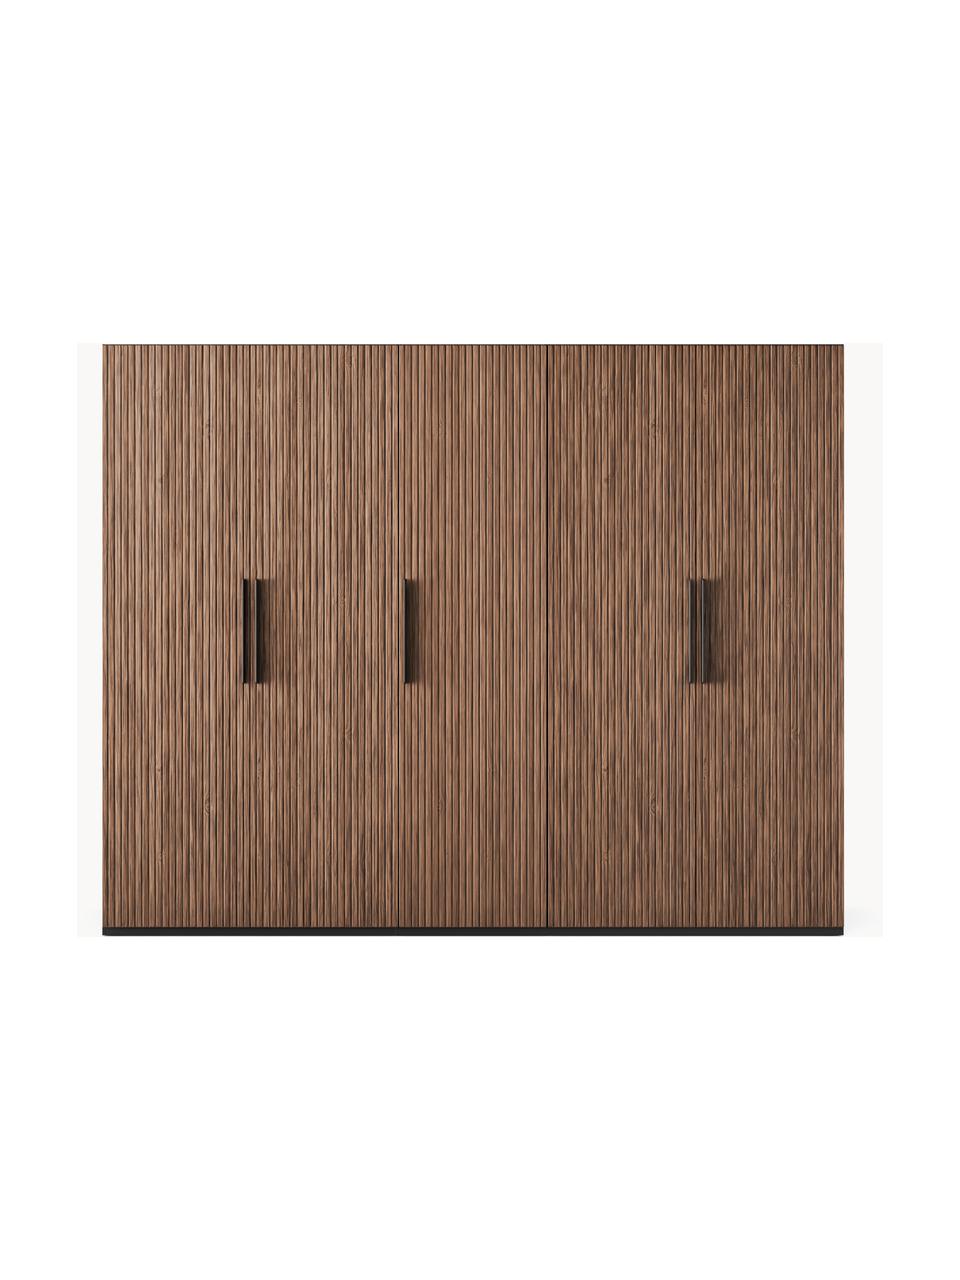 Modulárna šatníková skriňa s otočnými dverami Simone, šírka 250 cm, niekoľko variantov, Vzhľad orechového dreva, čierna, Classic, Š 250 x V 236 cm